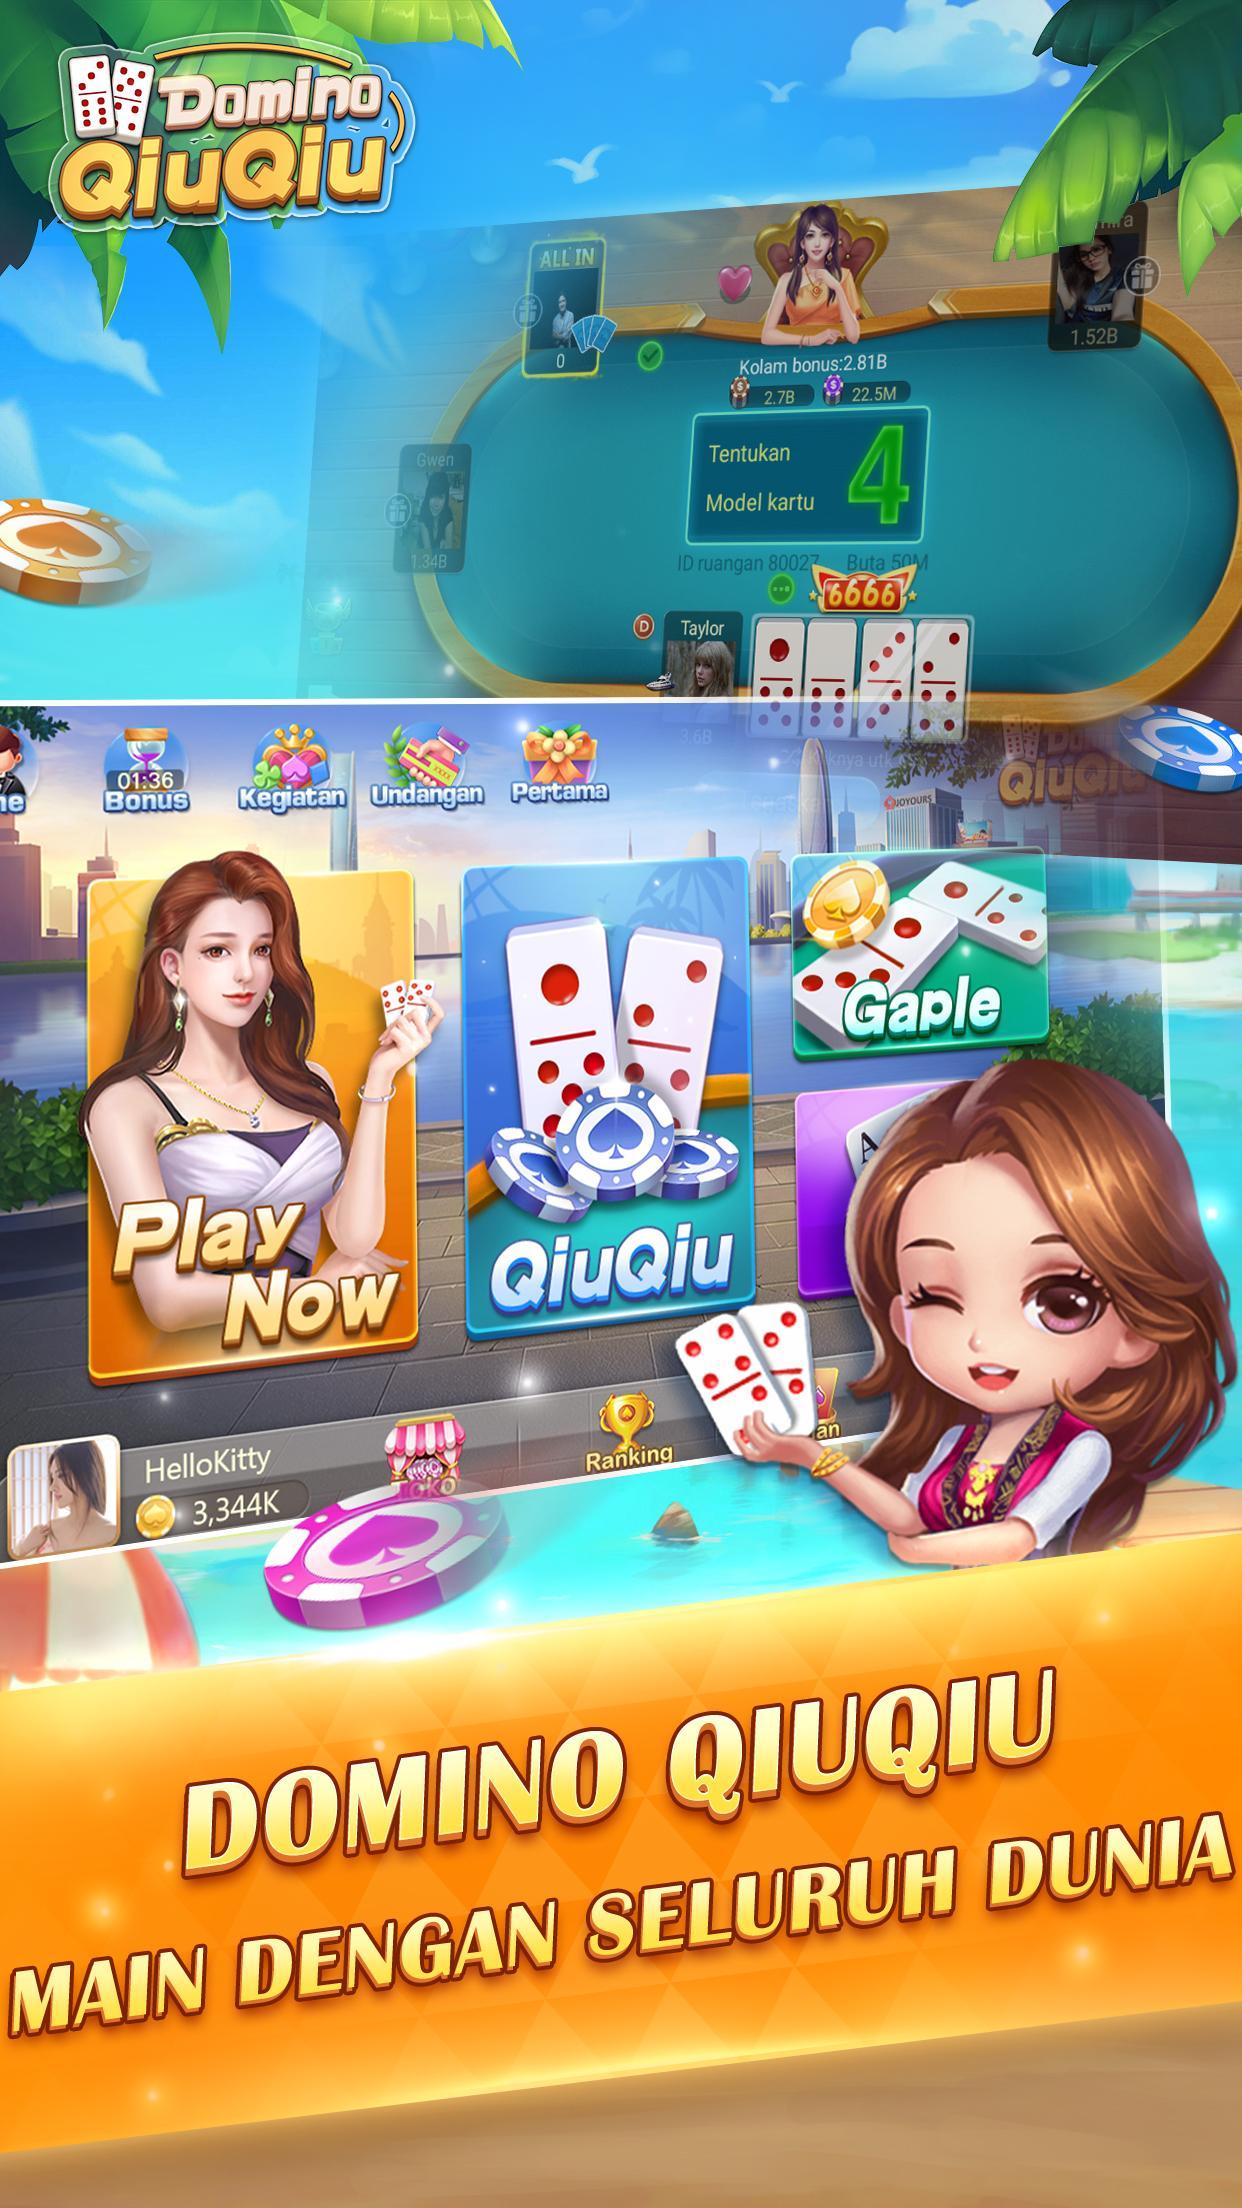 Cara Main Domino Qiuqiu Bersama Teman - Berbagai Permainan